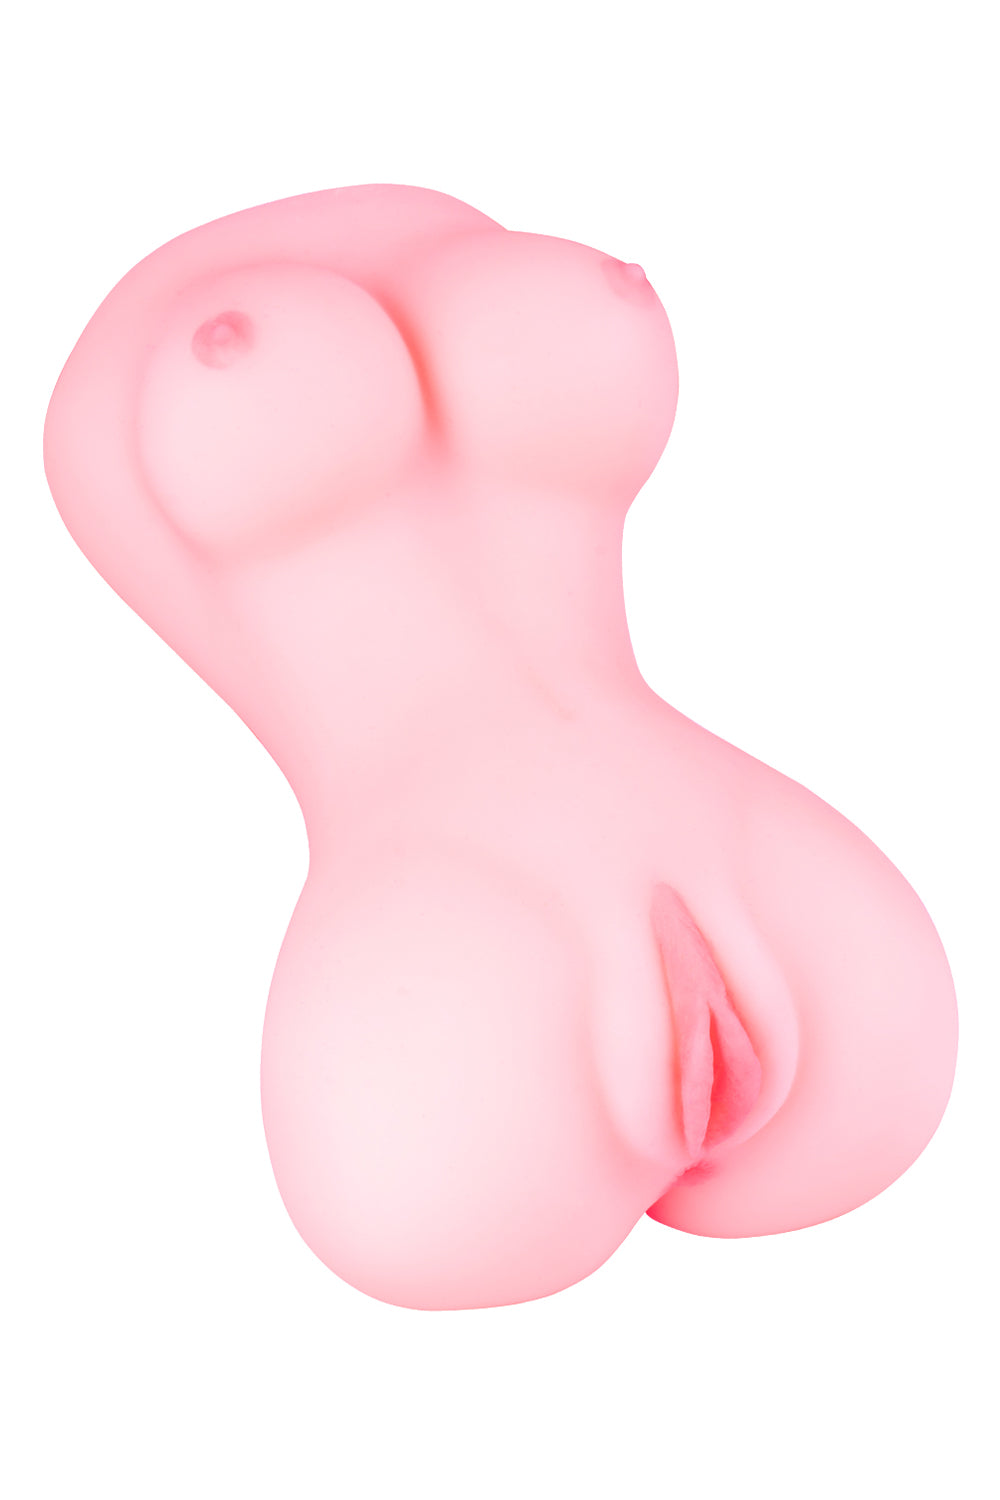 US Stock - Realistic Male Masturbators with Soft Boobs Butt Design Torso Sex Doll